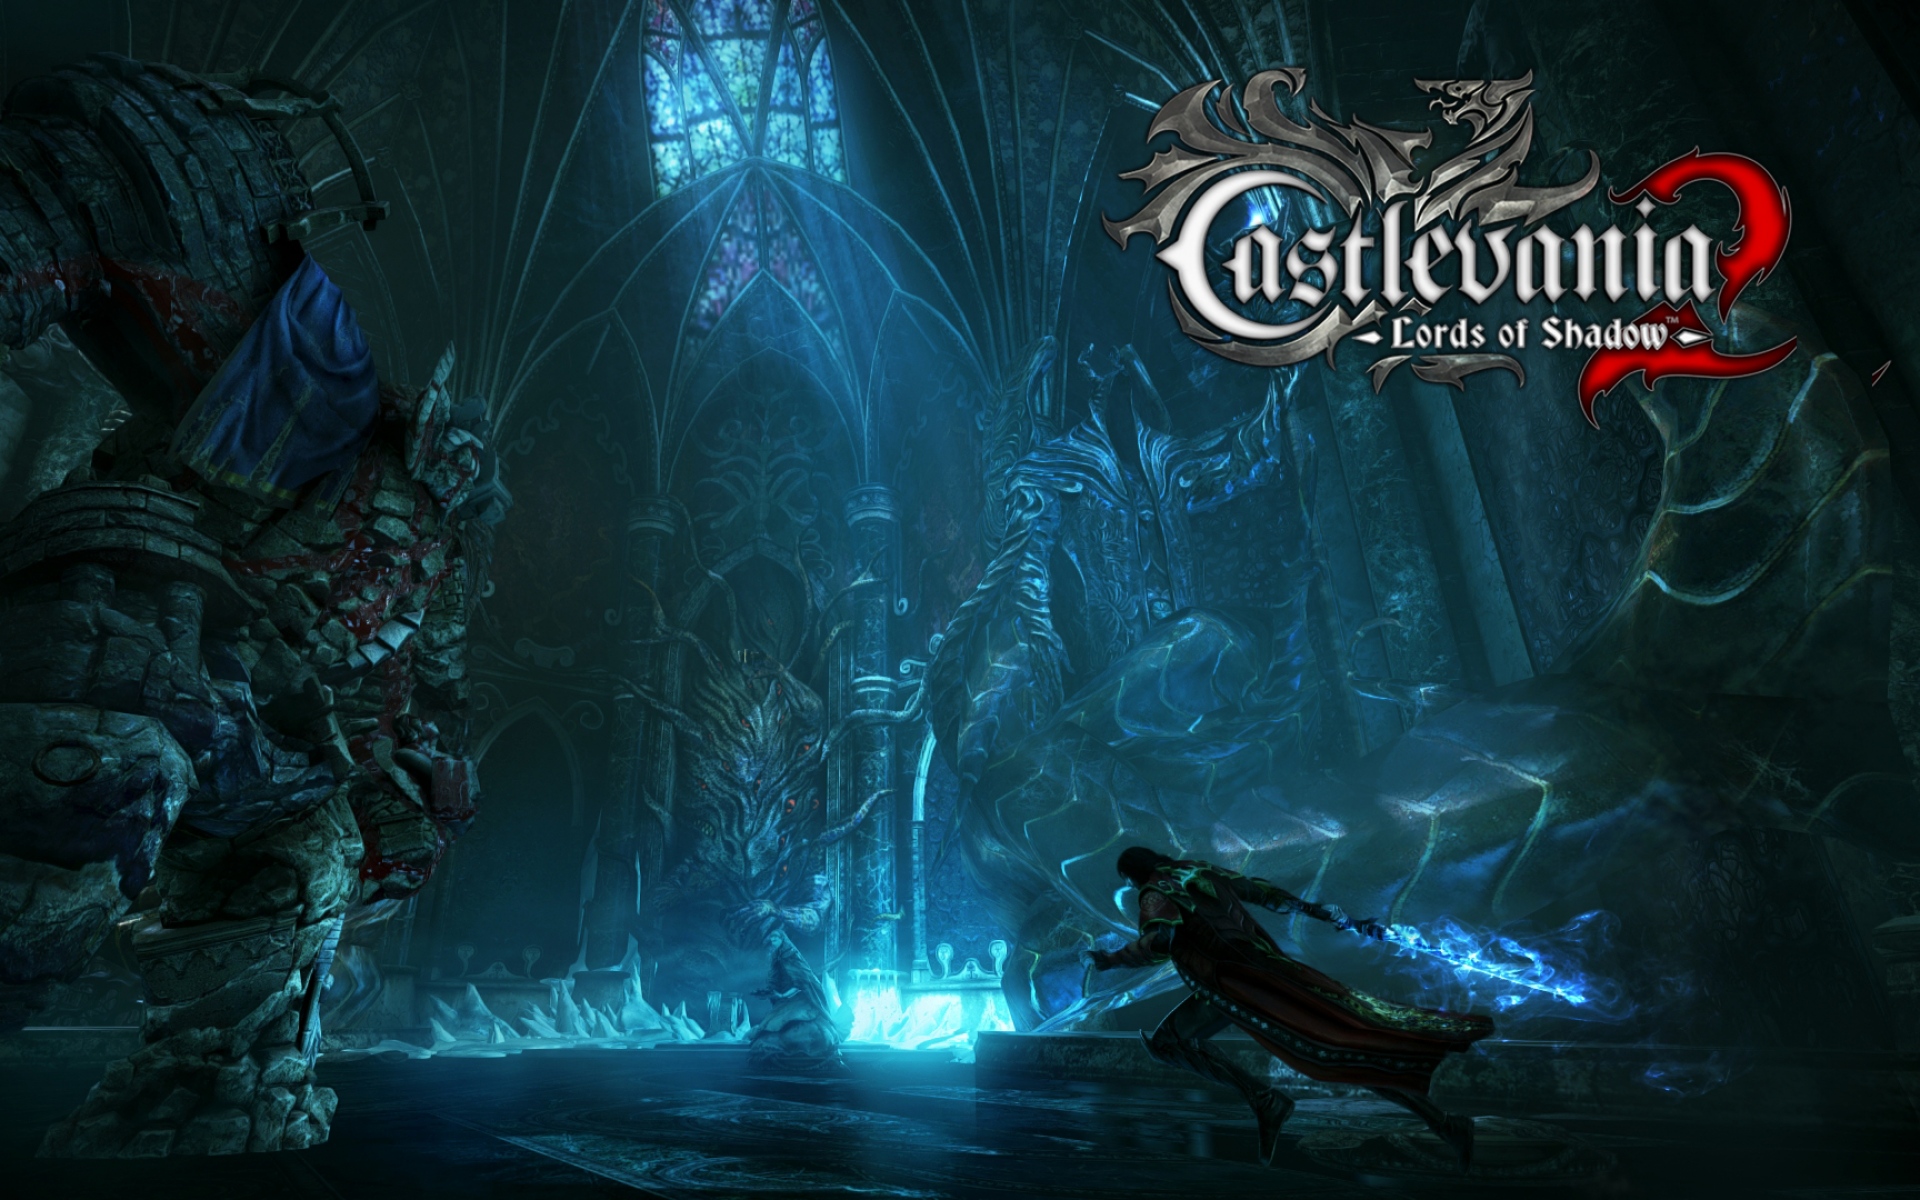 Картинки Castlevania владыки тени 2, граф Дракула, сатану, Belmont, Алукард, PC, PlayStation 3, Xbox 360 фото и обои на рабочий стол